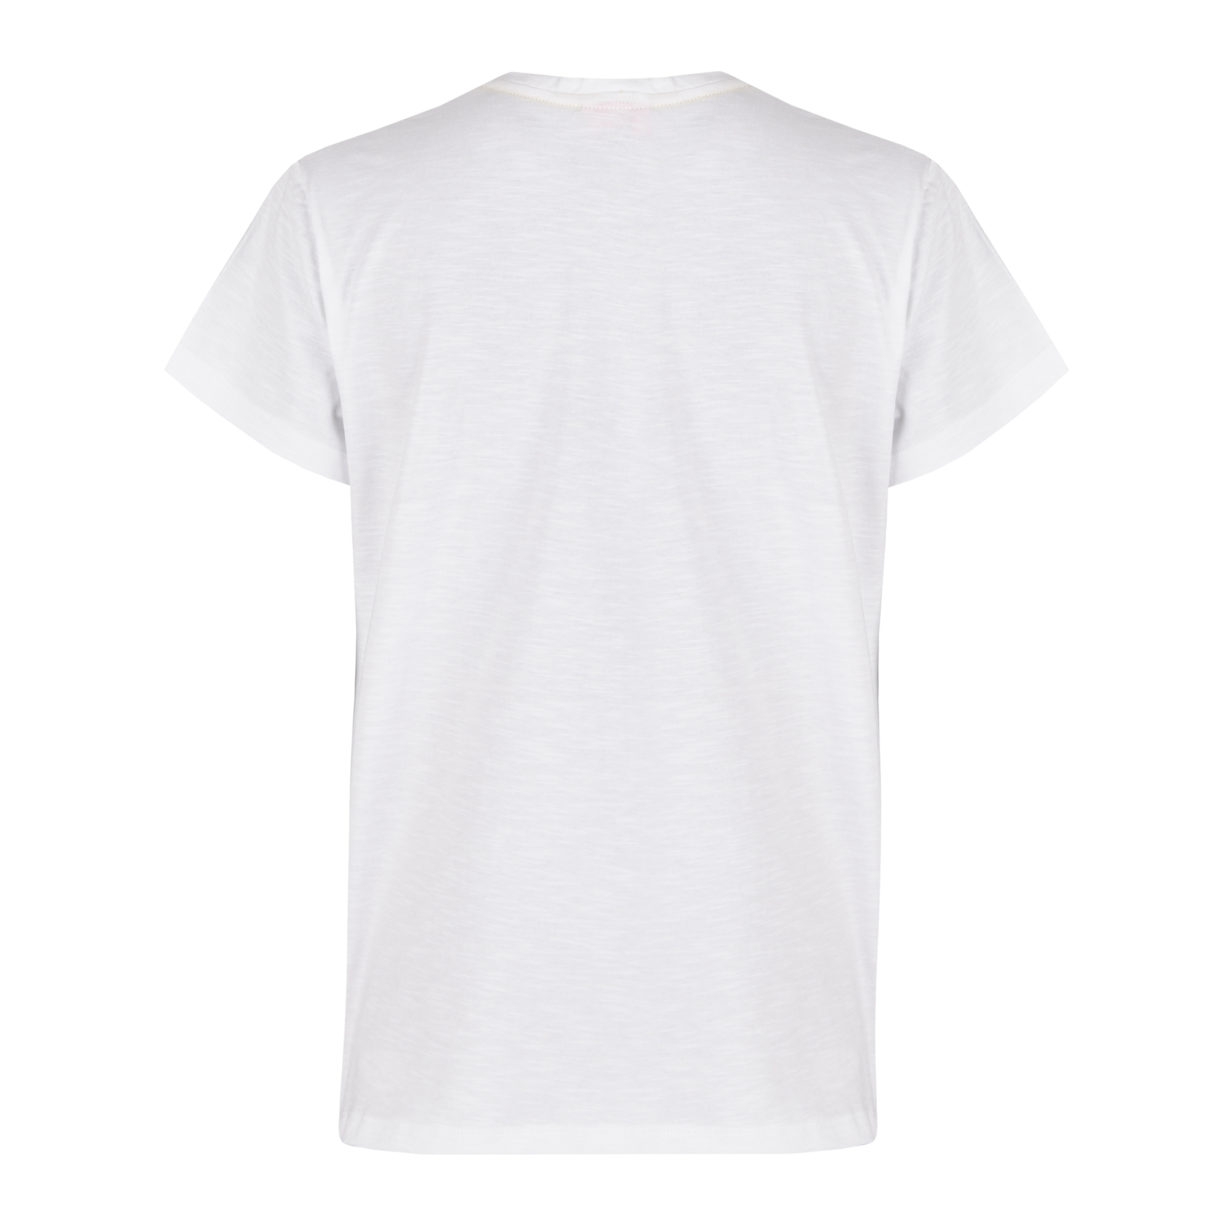 Feekikki V-Neck T-Shirt Weiss Rücken